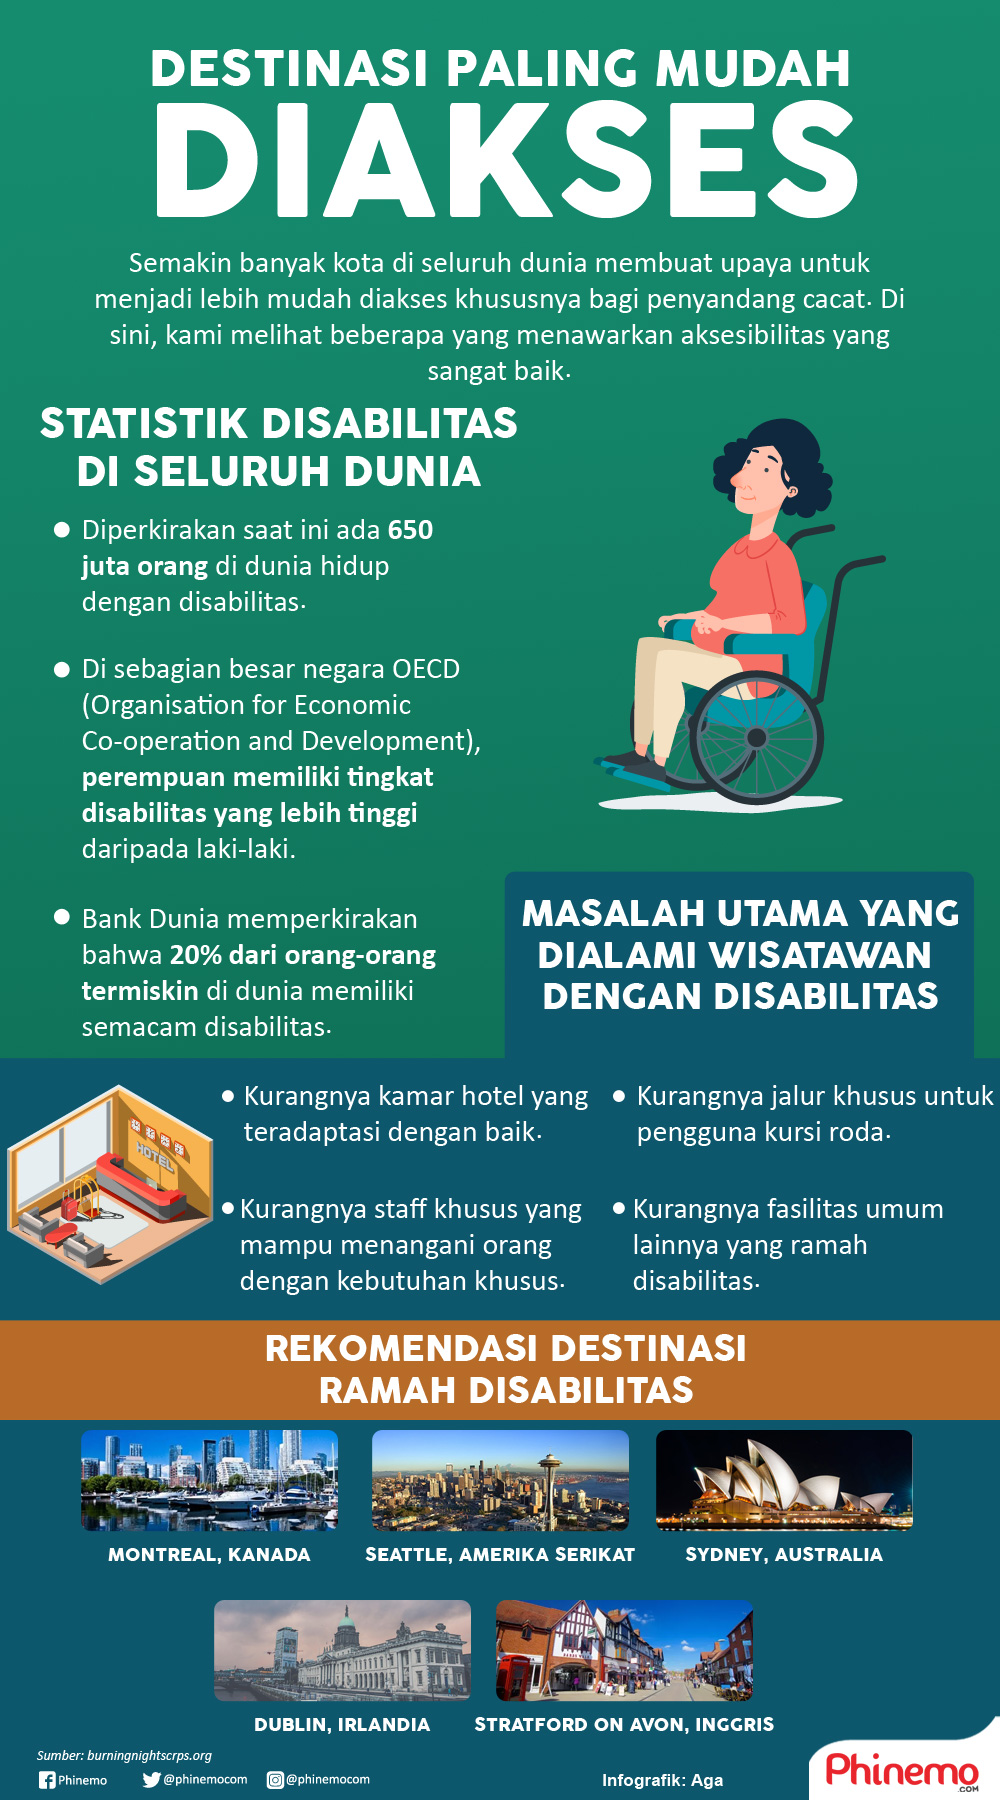 Infografik Destinasi Paling Mudah Diakses Untuk Penyandang Disabilitas.